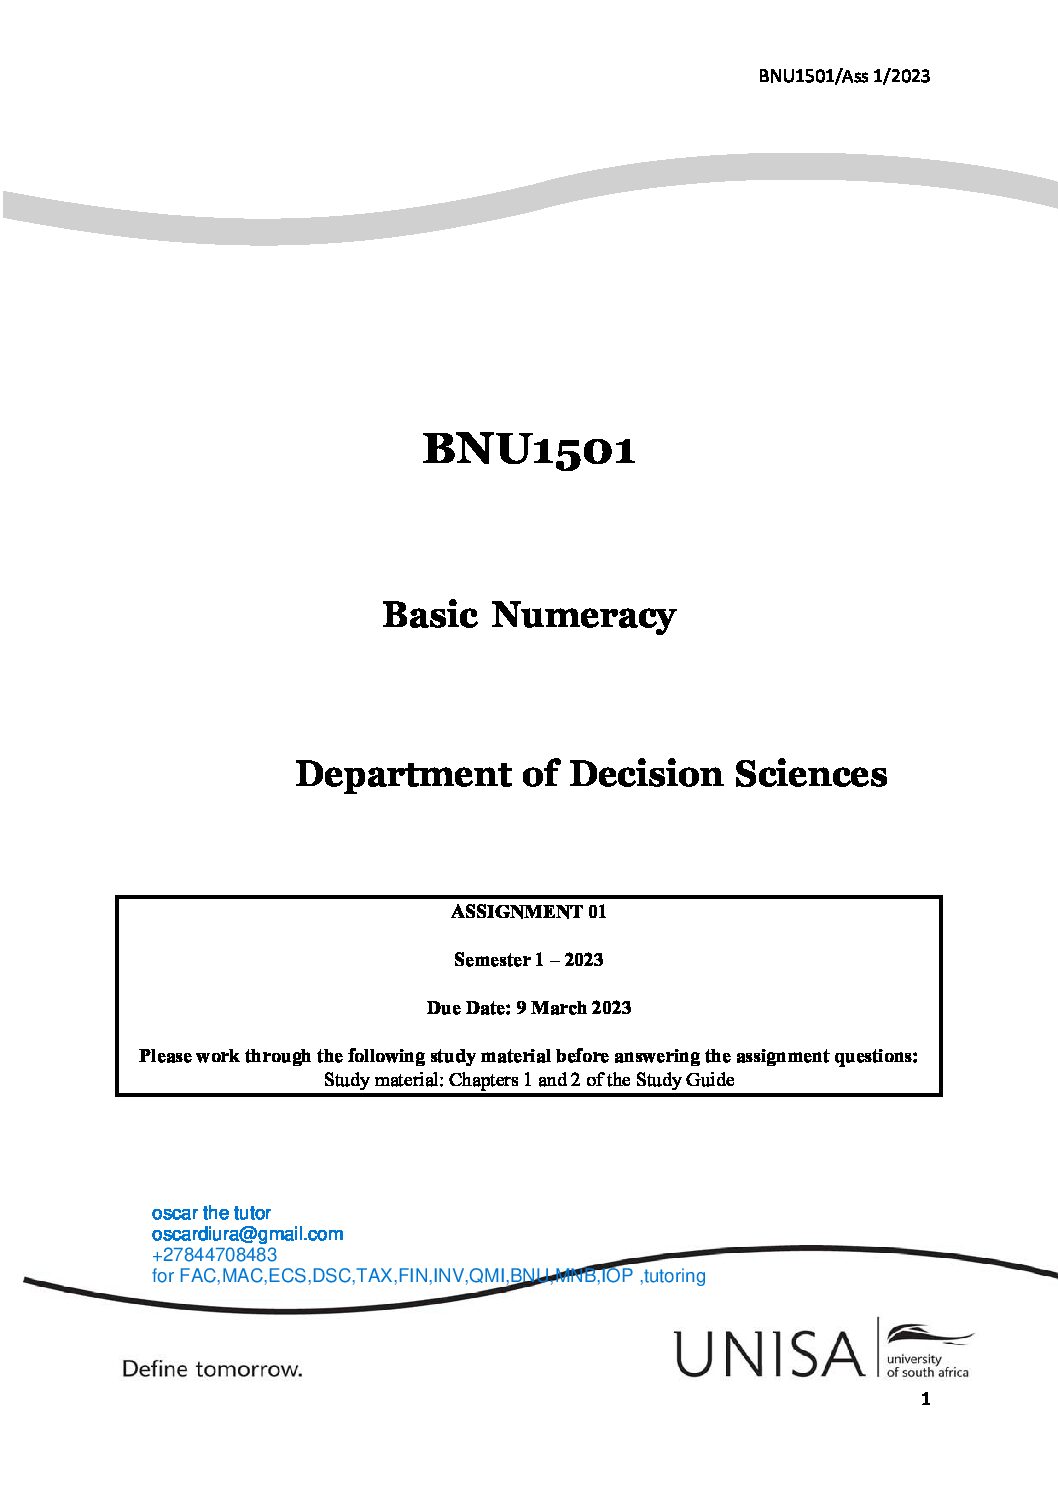 bnu thesis 2023